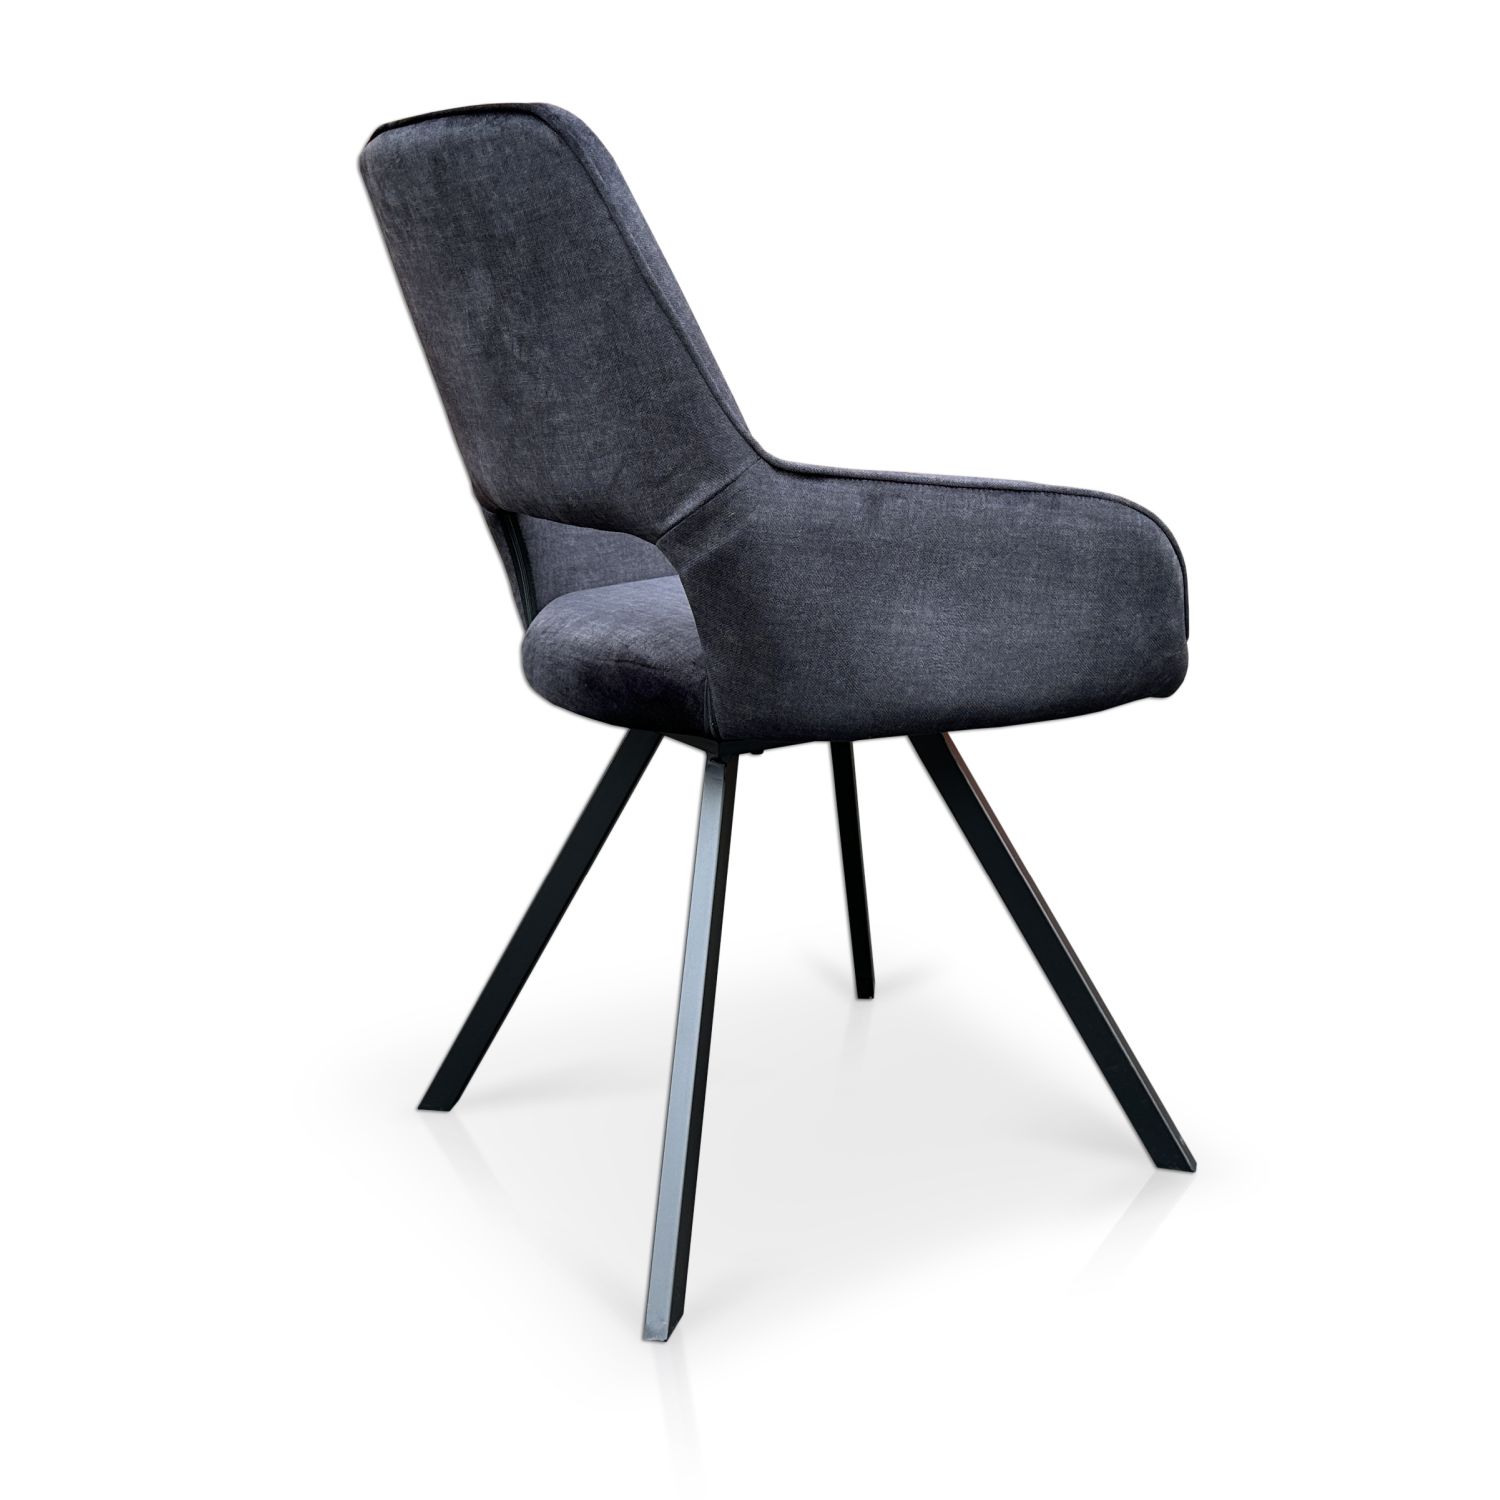 Krzesło obrotowe Portland z obrotowym siedziskiem 180° tkanina vogue 18